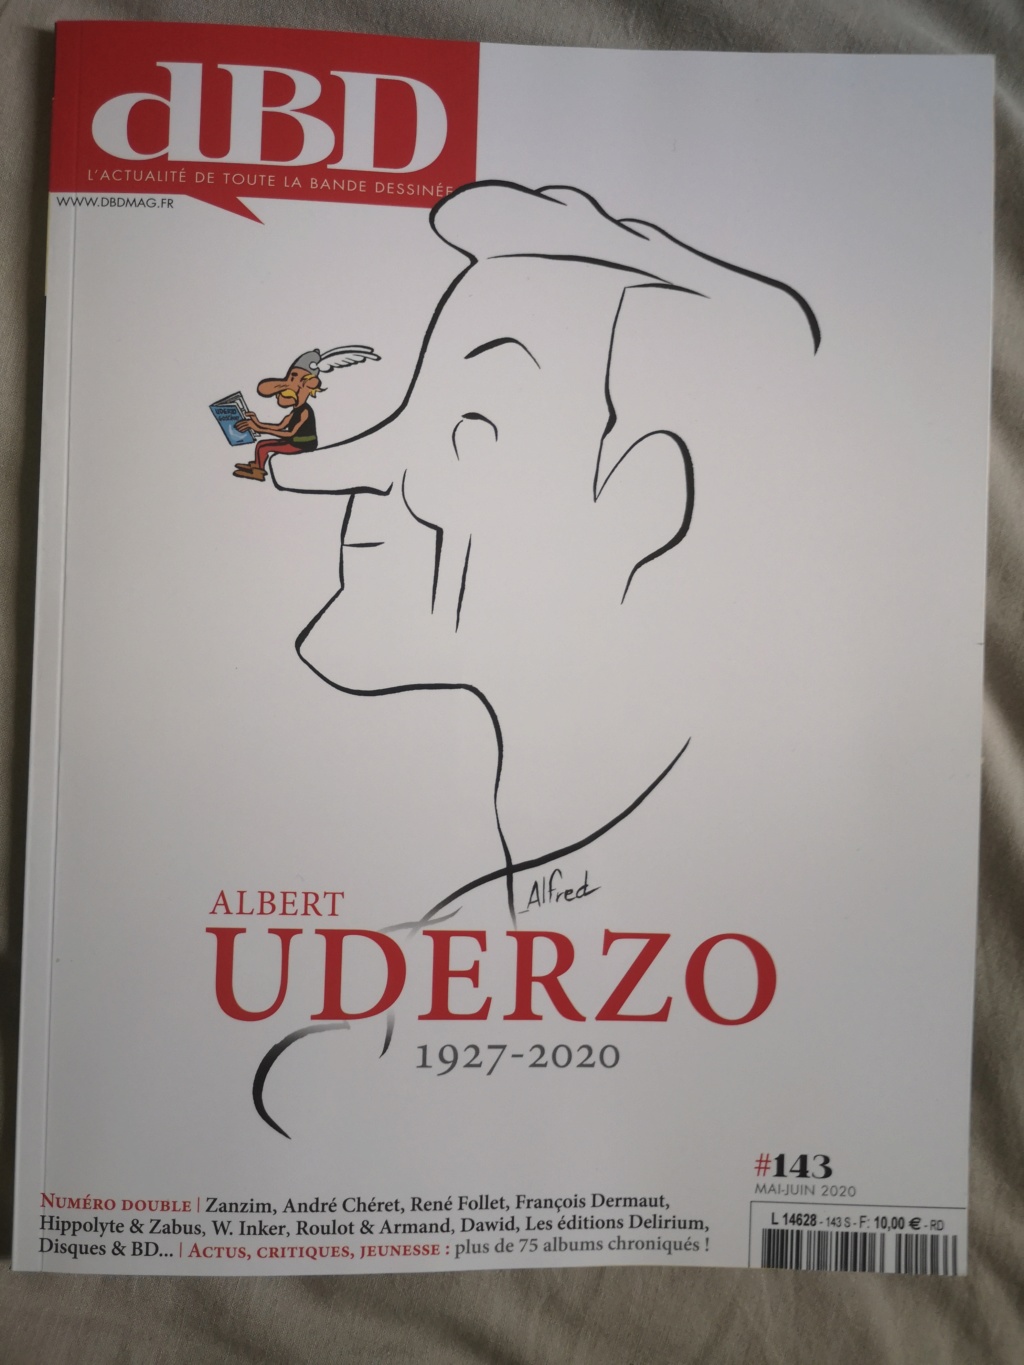 Hommage à Albert Uderzo dans le DBD de juin avec un très bel article  écrit par son ami Alain Duchêne Img_2102